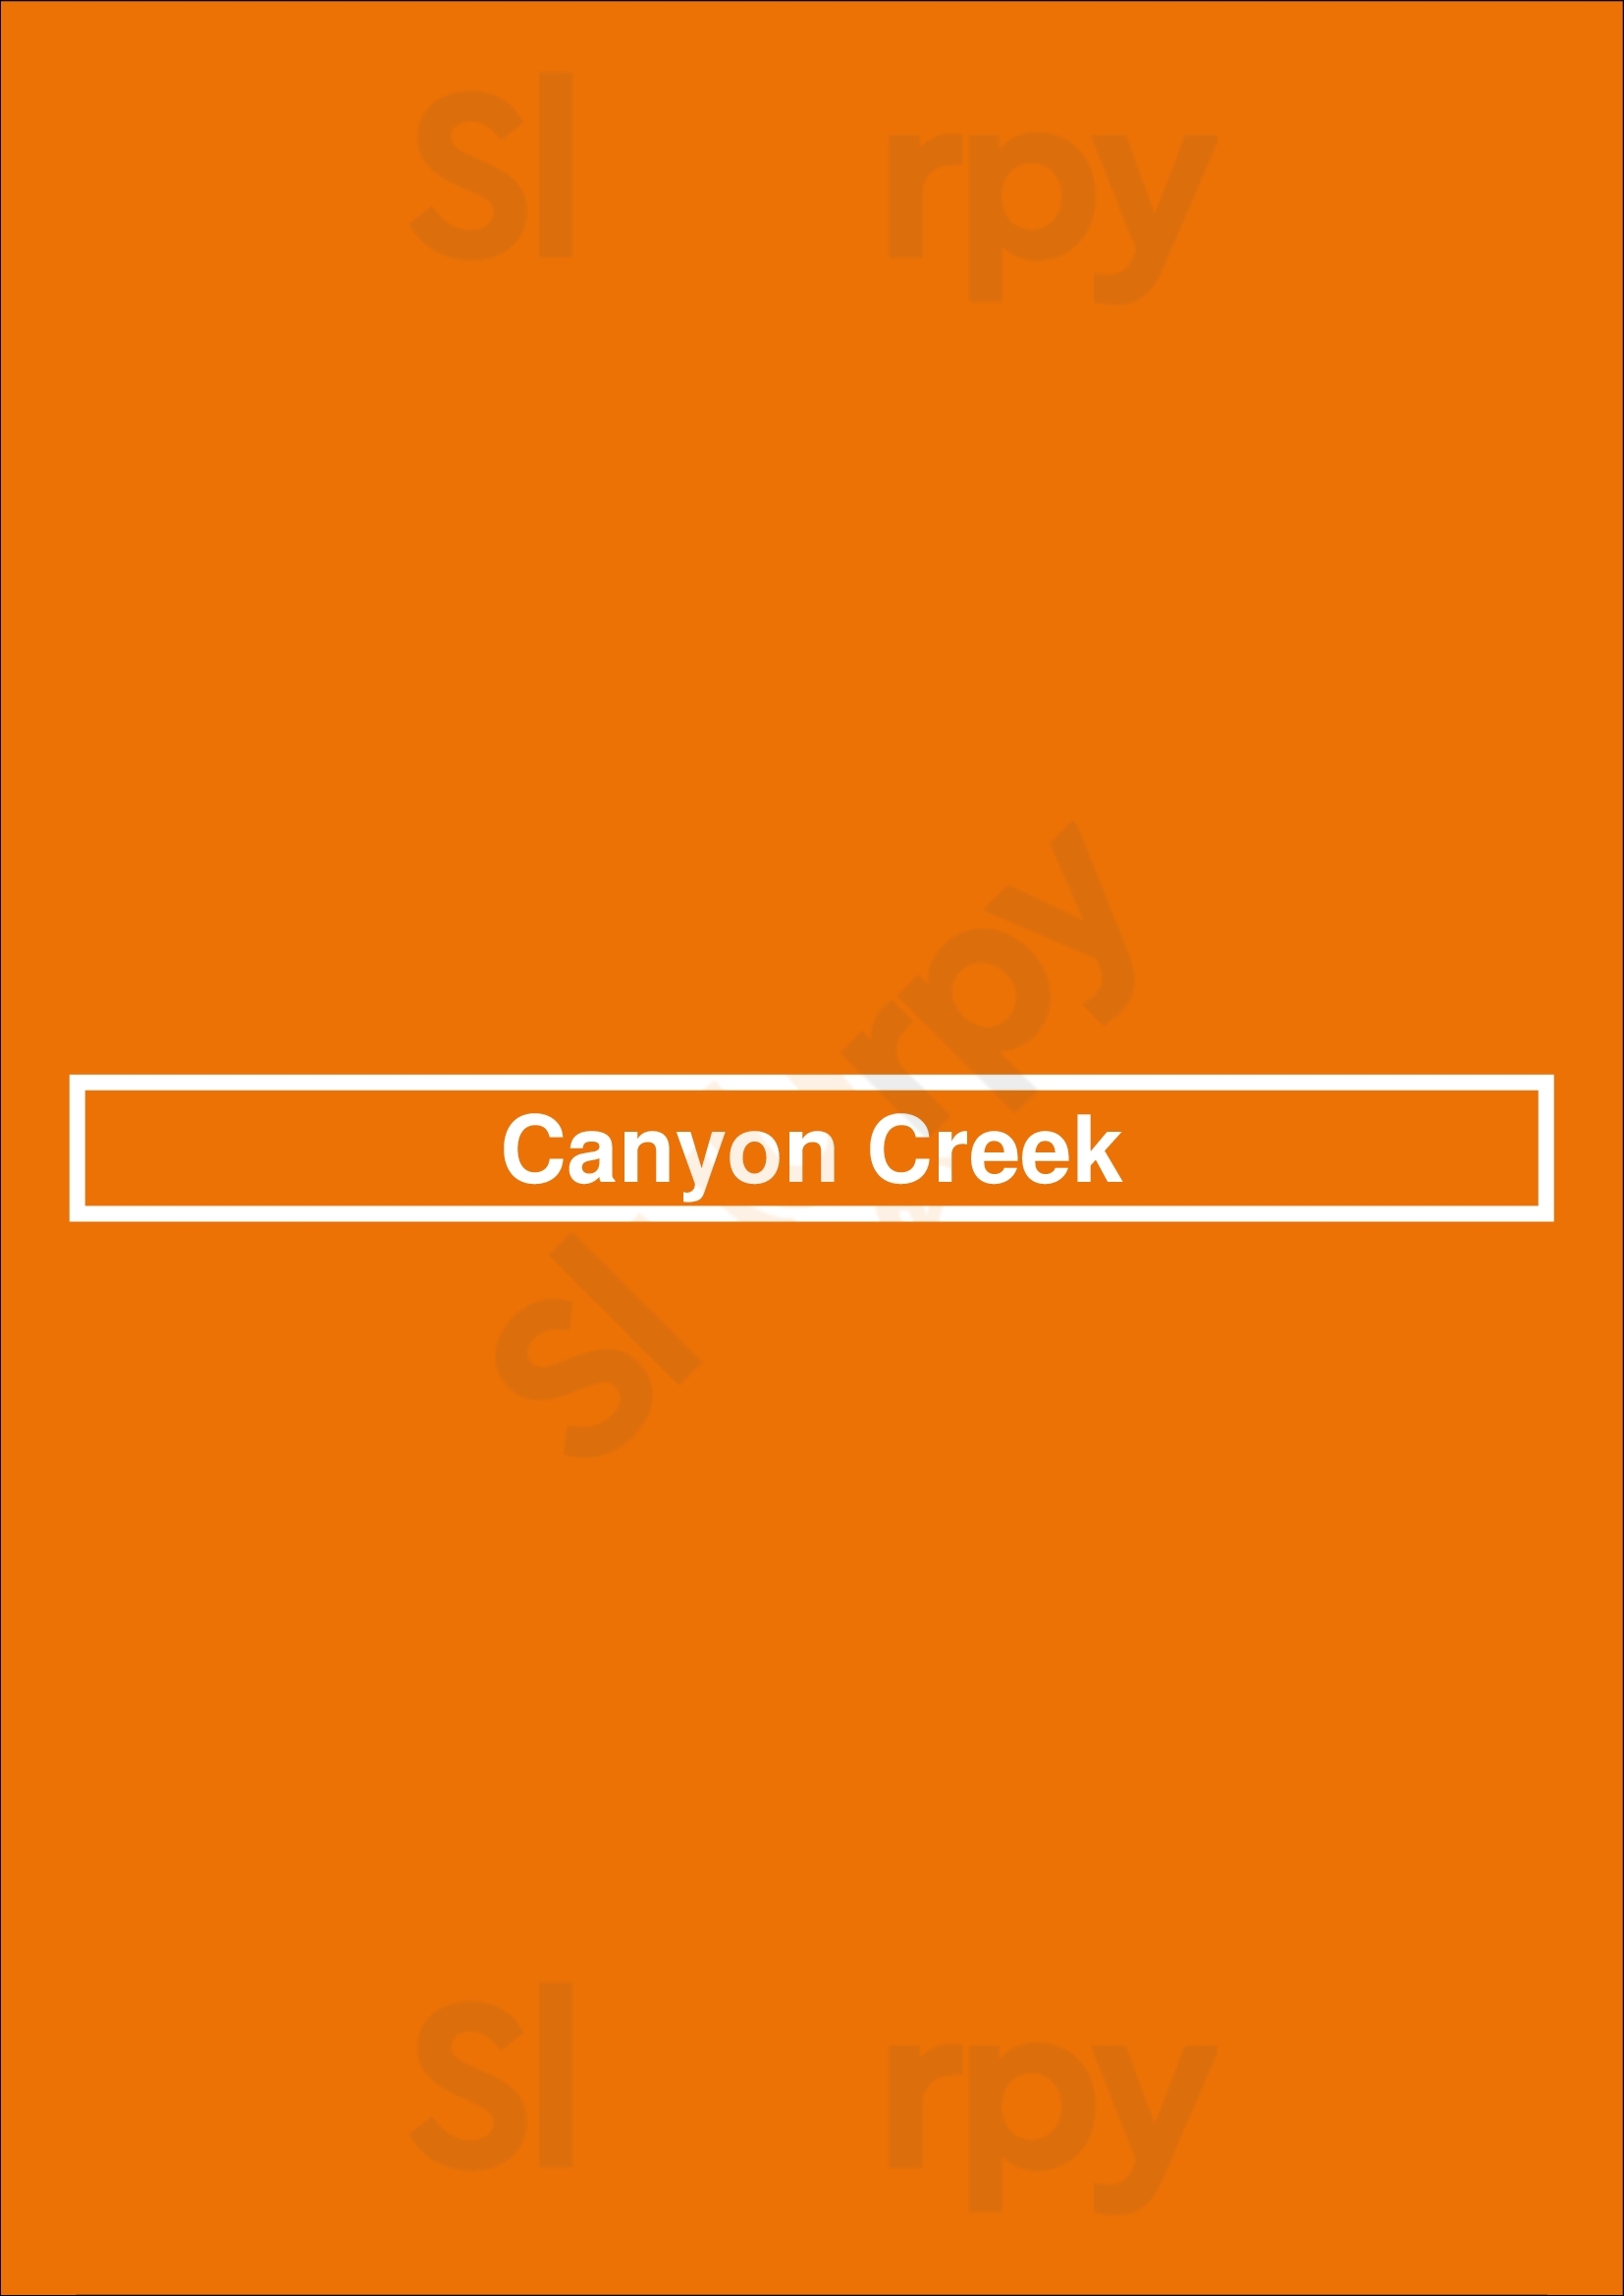 Canyon Creek Niagara Falls Menu - 1